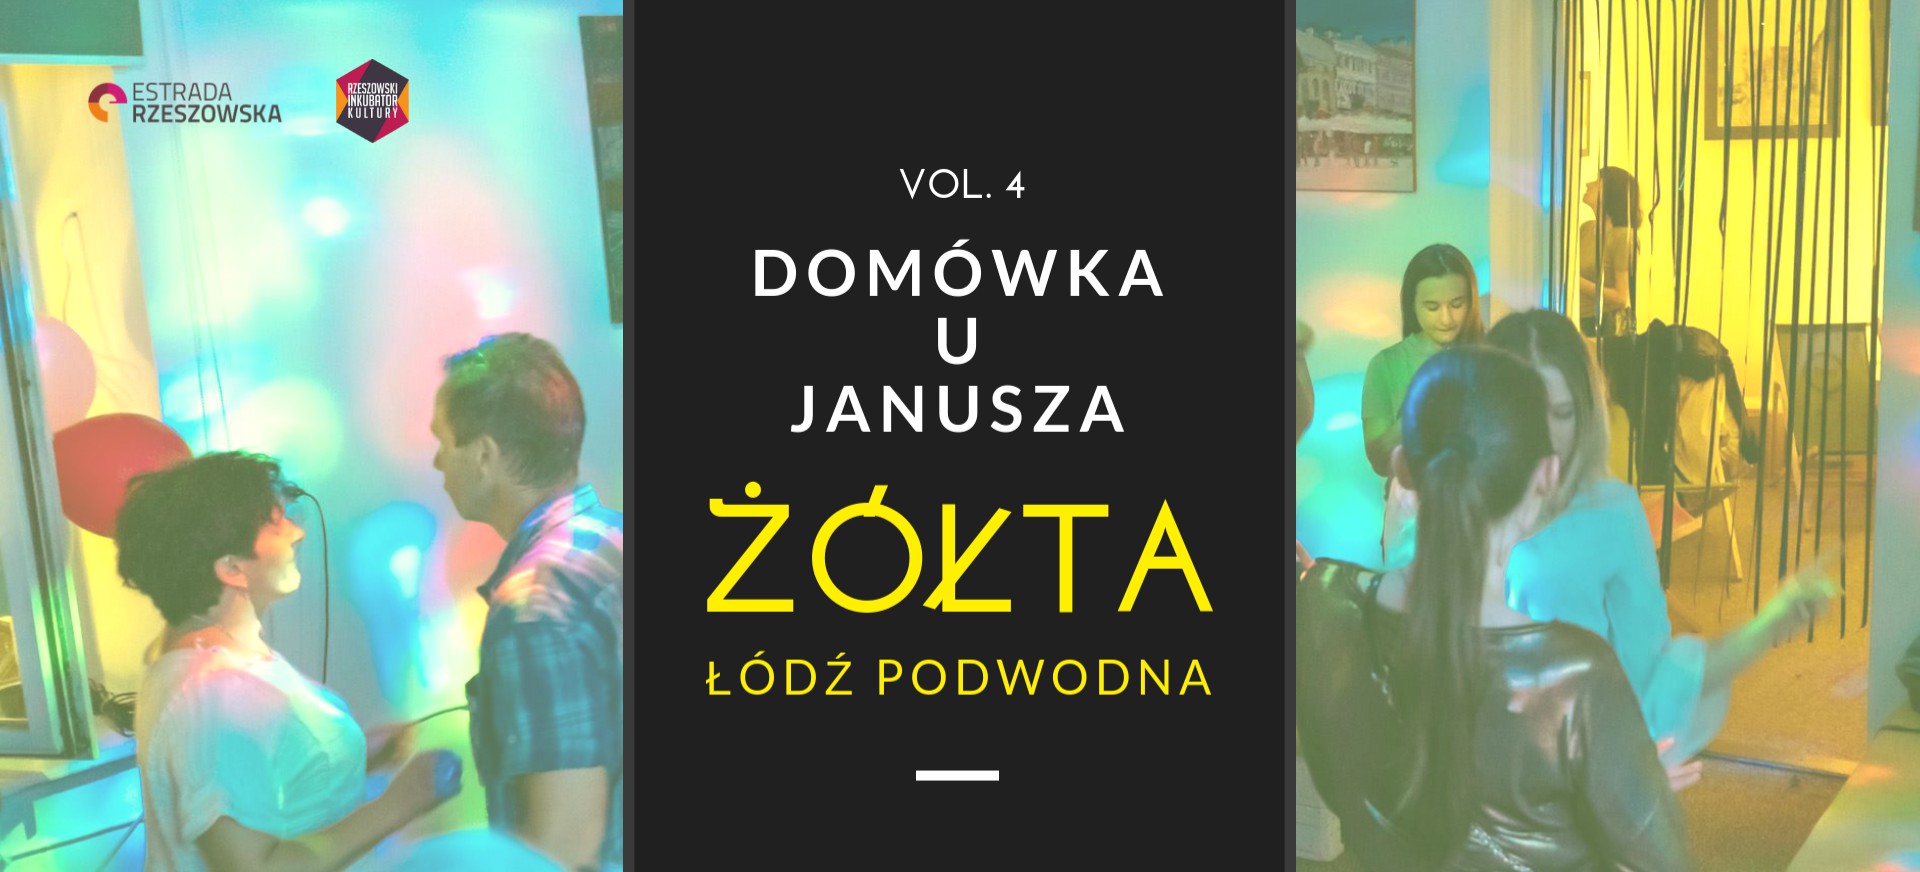 Domówka u Janusza vol. 4 w Rzeszowie – popłyniemy „Żółtą Łodzią Podwodną”